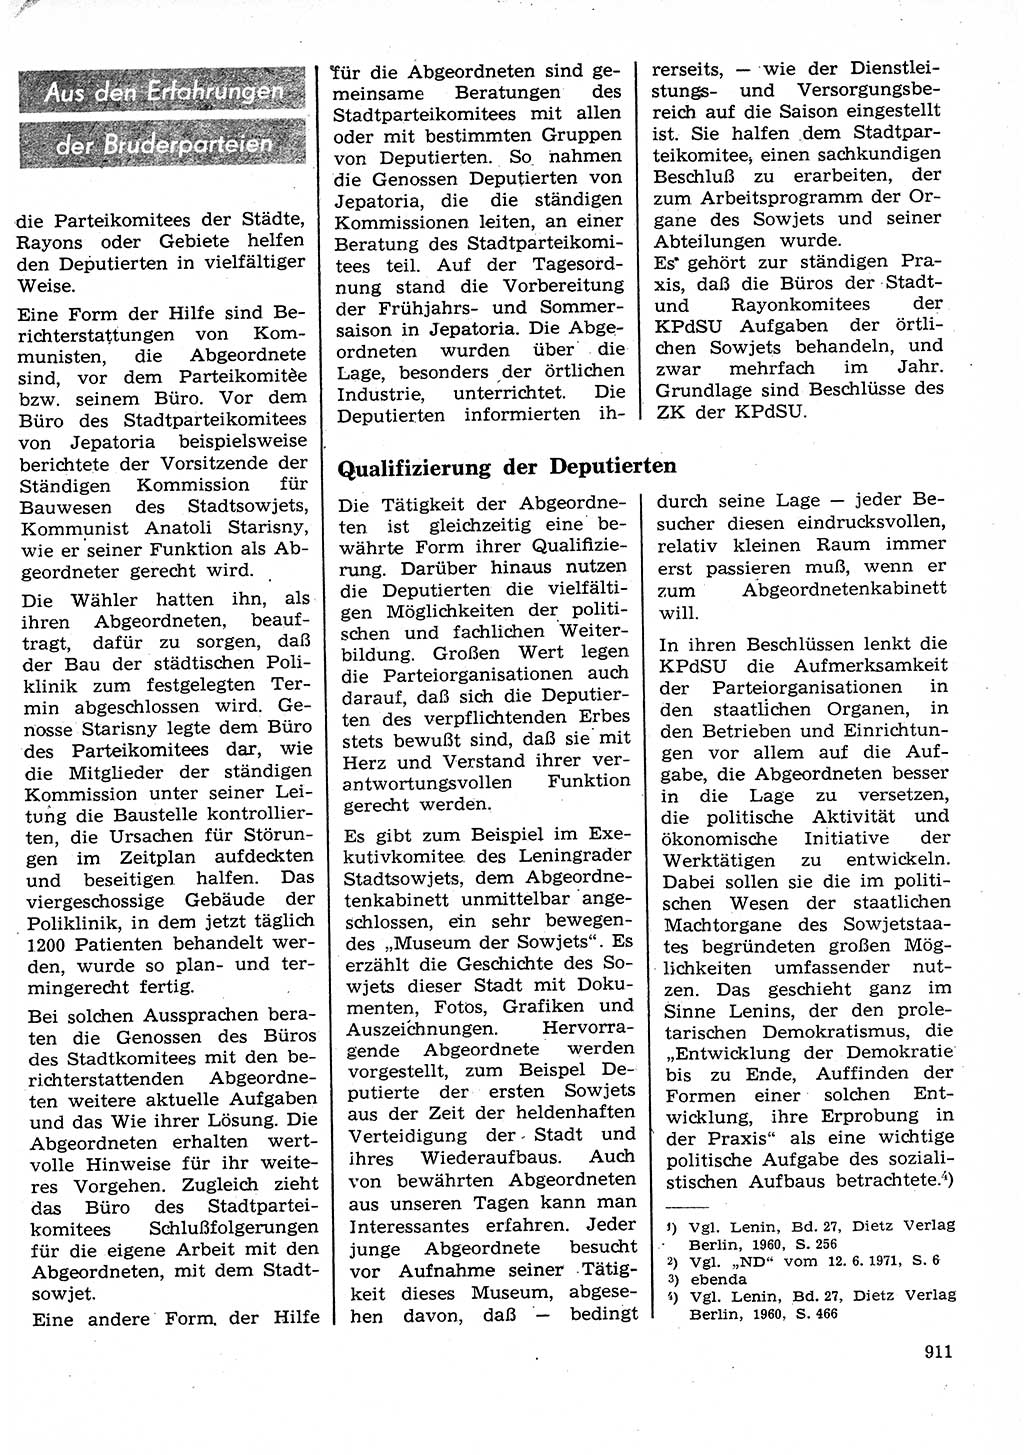 Neuer Weg (NW), Organ des Zentralkomitees (ZK) der SED (Sozialistische Einheitspartei Deutschlands) für Fragen des Parteilebens, 26. Jahrgang [Deutsche Demokratische Republik (DDR)] 1971, Seite 911 (NW ZK SED DDR 1971, S. 911)